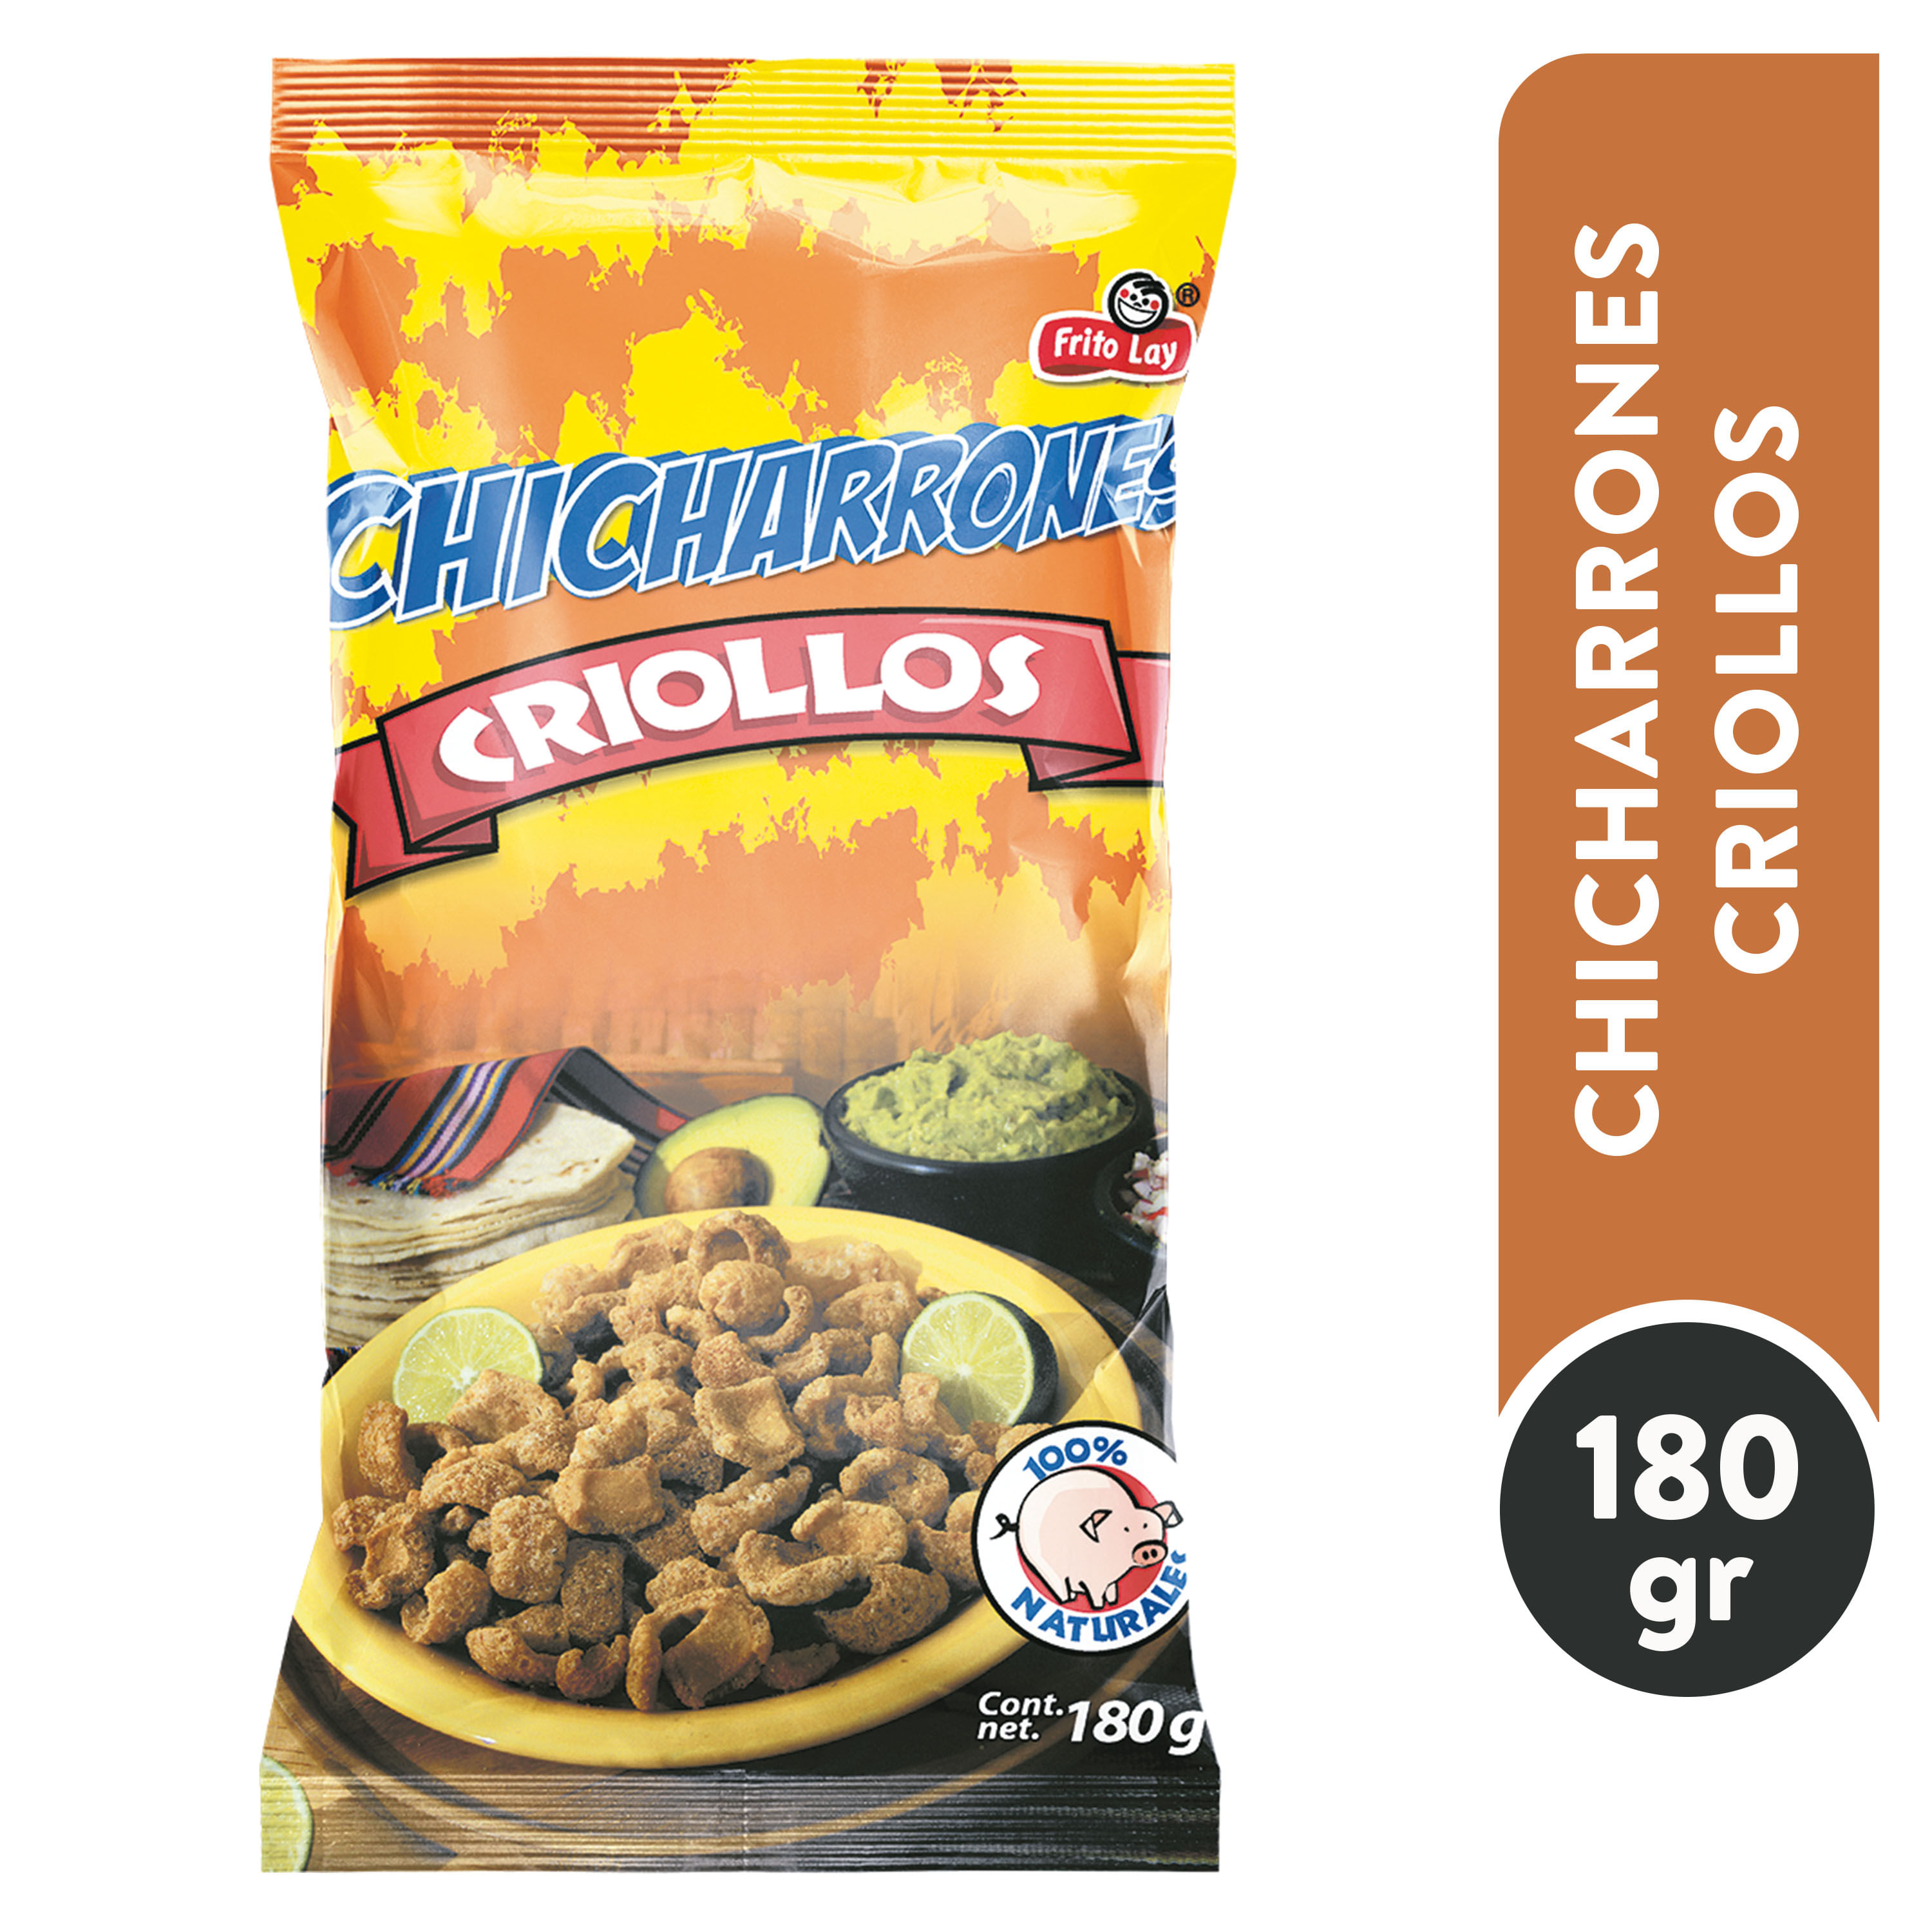 Snack-Frito-Lay-Chicharrones-Criollos-Originales-180g-1-13668